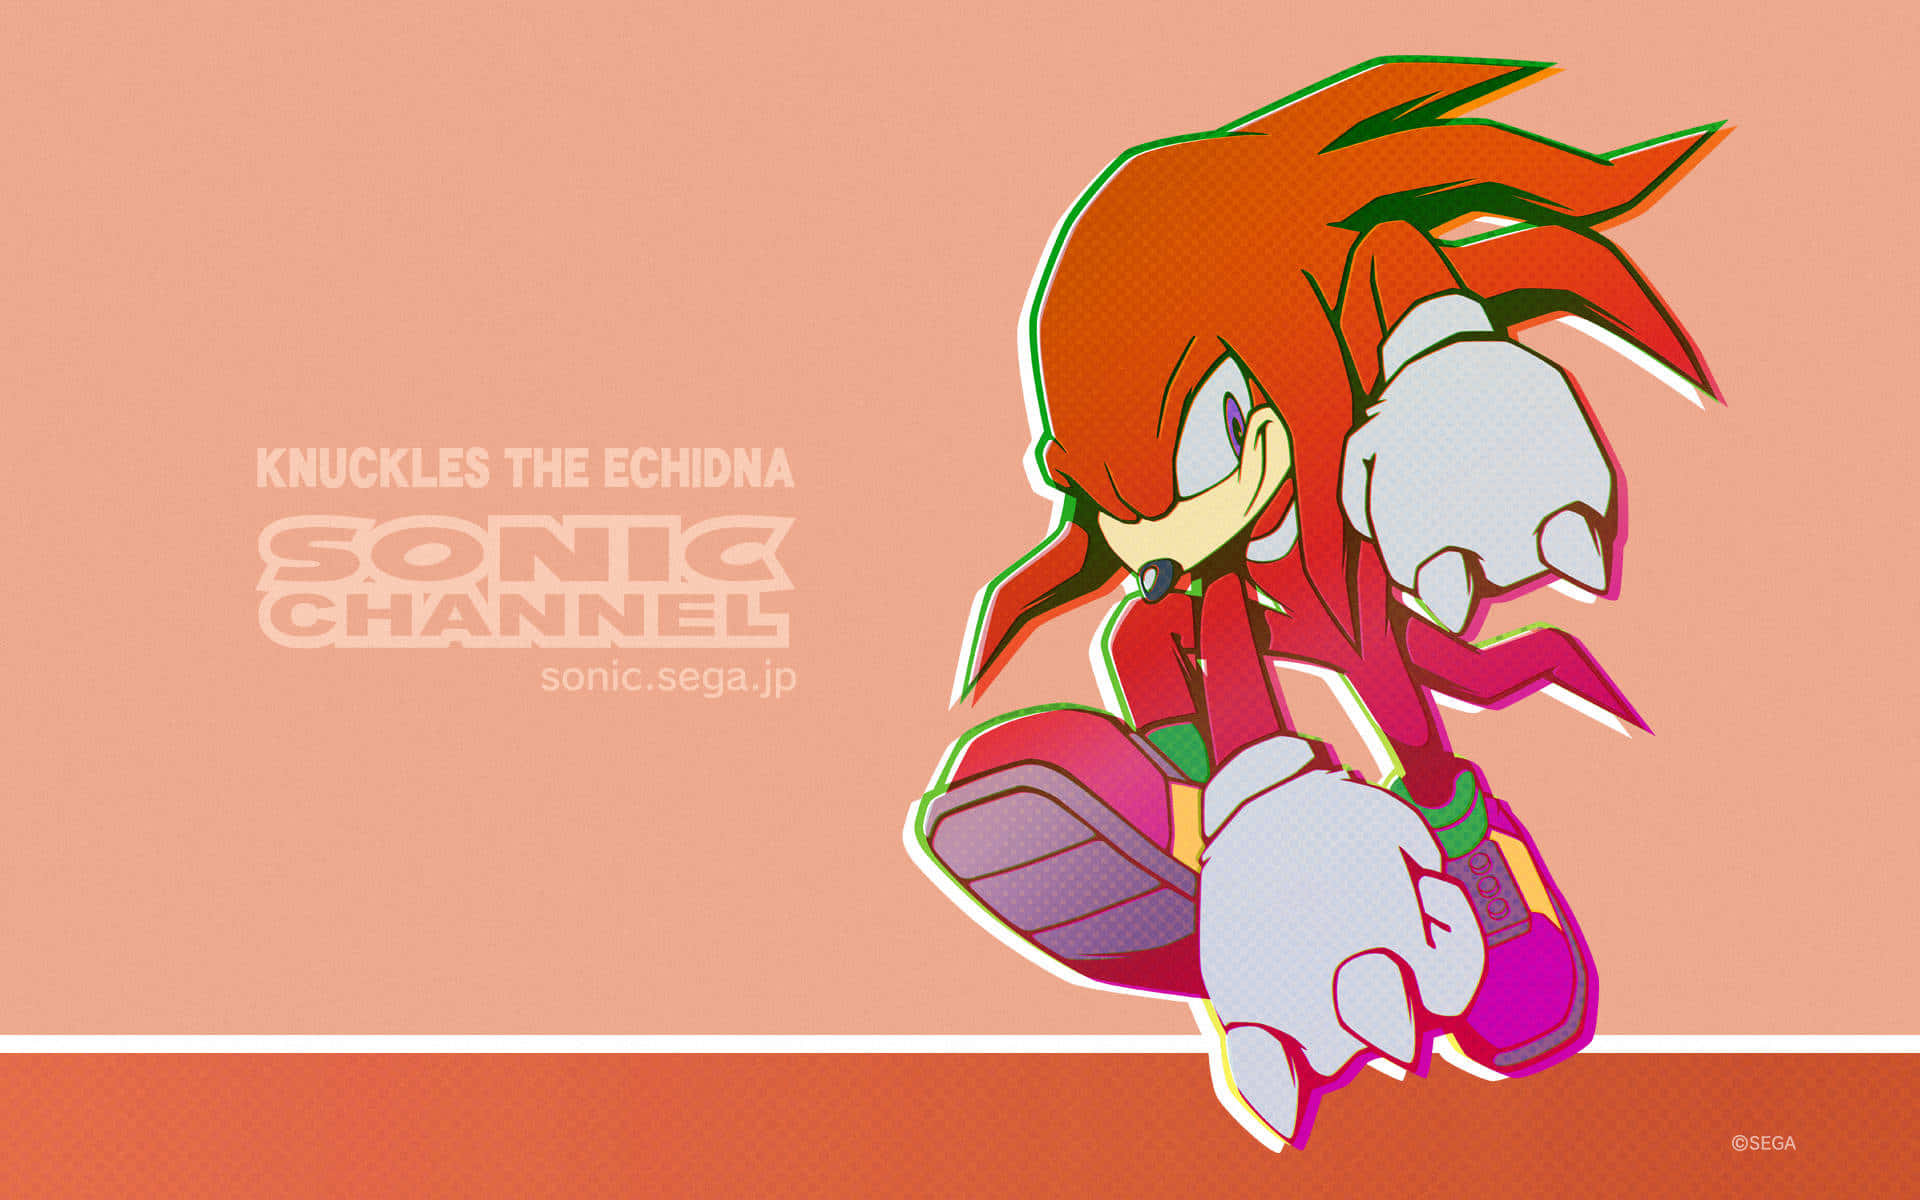 Knucklesder Ameisenigel, Ein Beliebter Fan-charakter Aus Der Sonic The Hedgehog-serie. Wallpaper